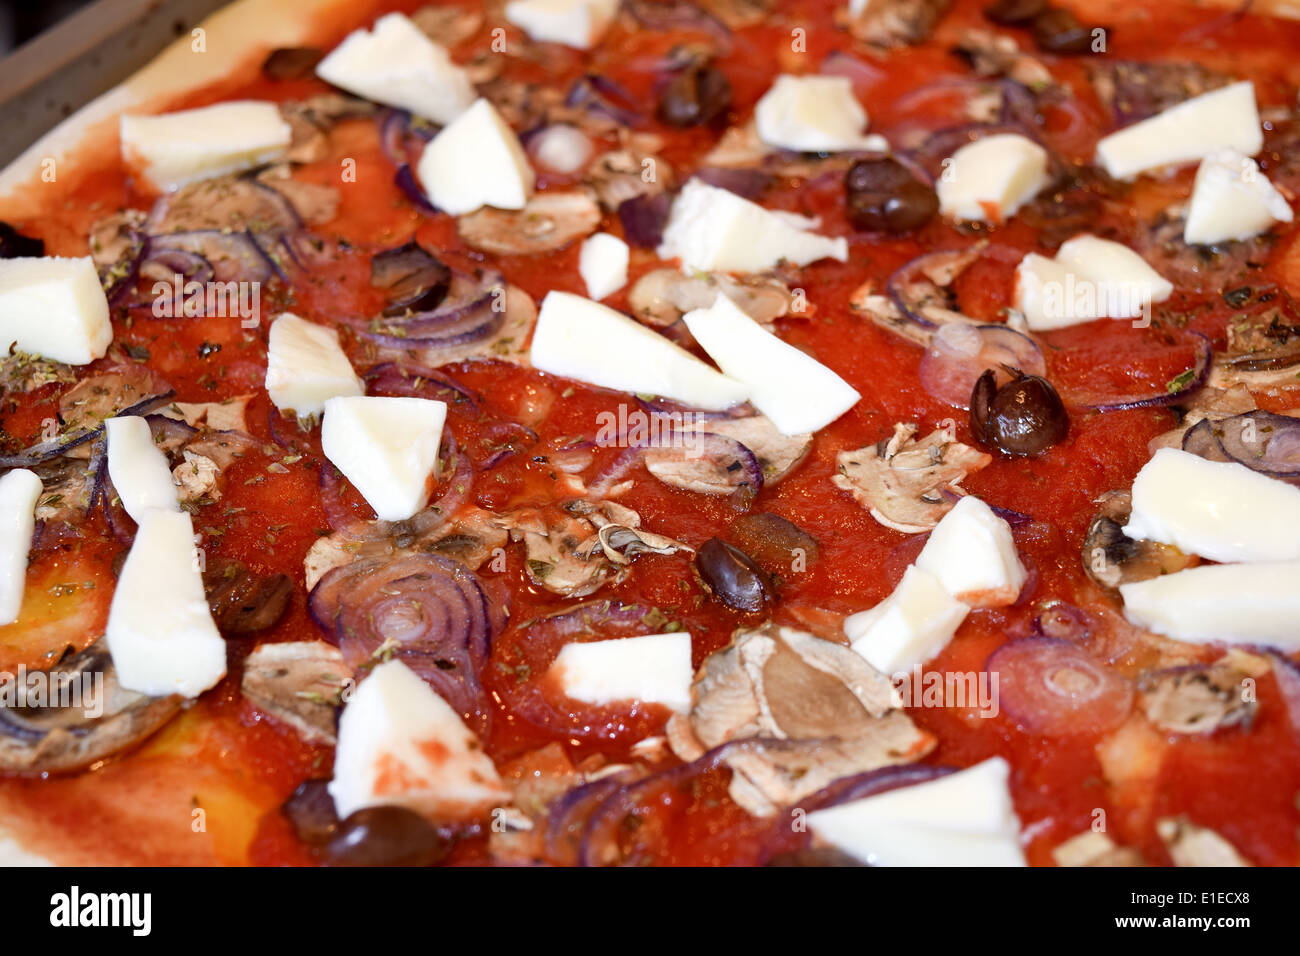 Tradizionale pizza italiana: pizza capricciosa con gustosi ingredienti Foto Stock